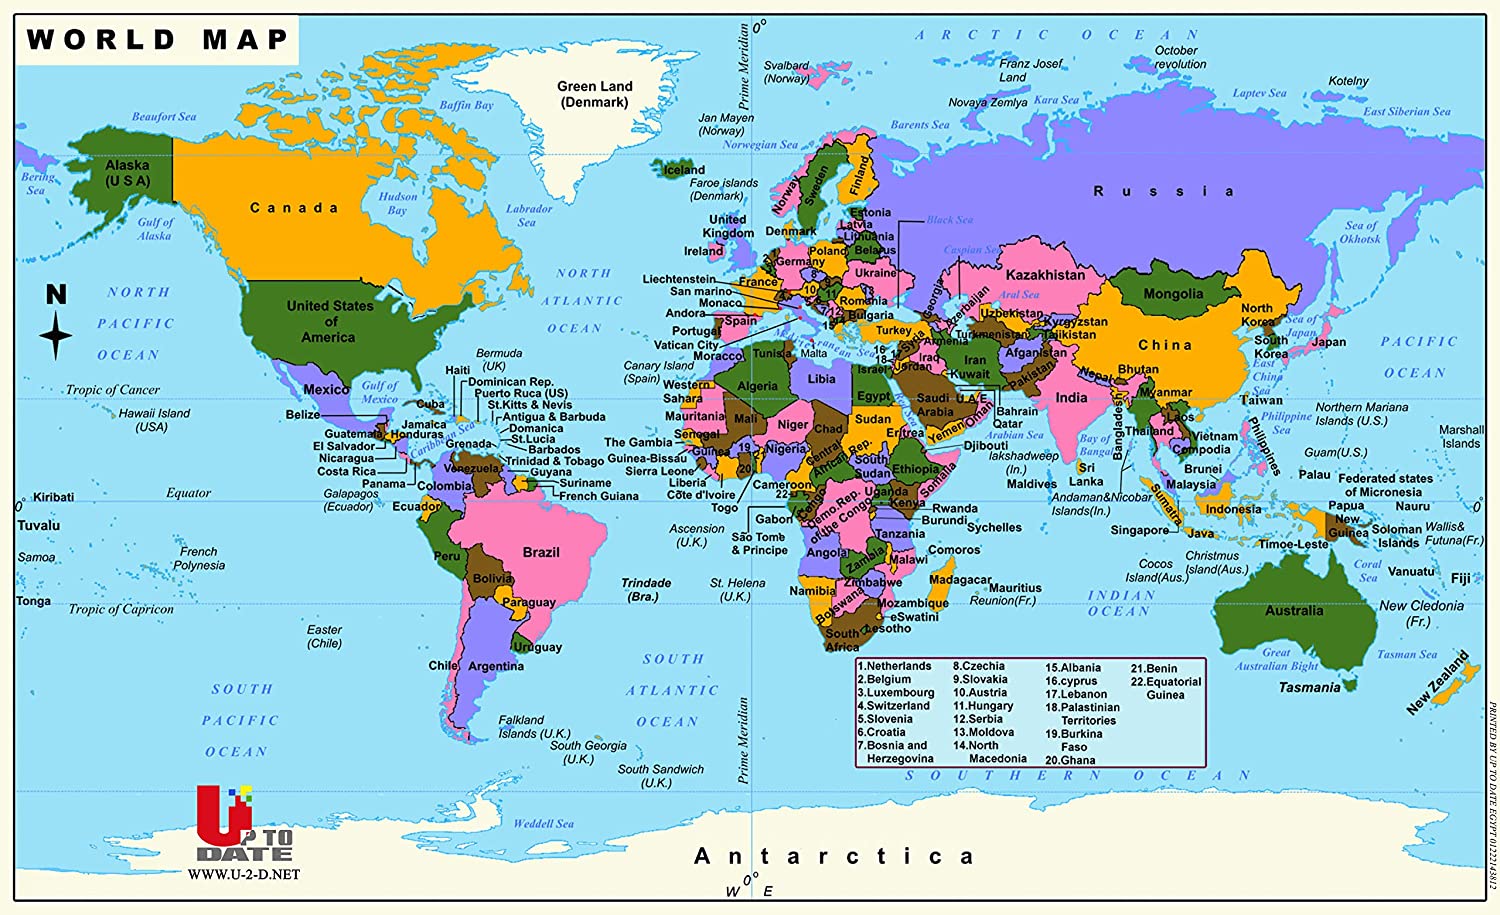 خريطة العالم الملونة - 115 × 70 سم